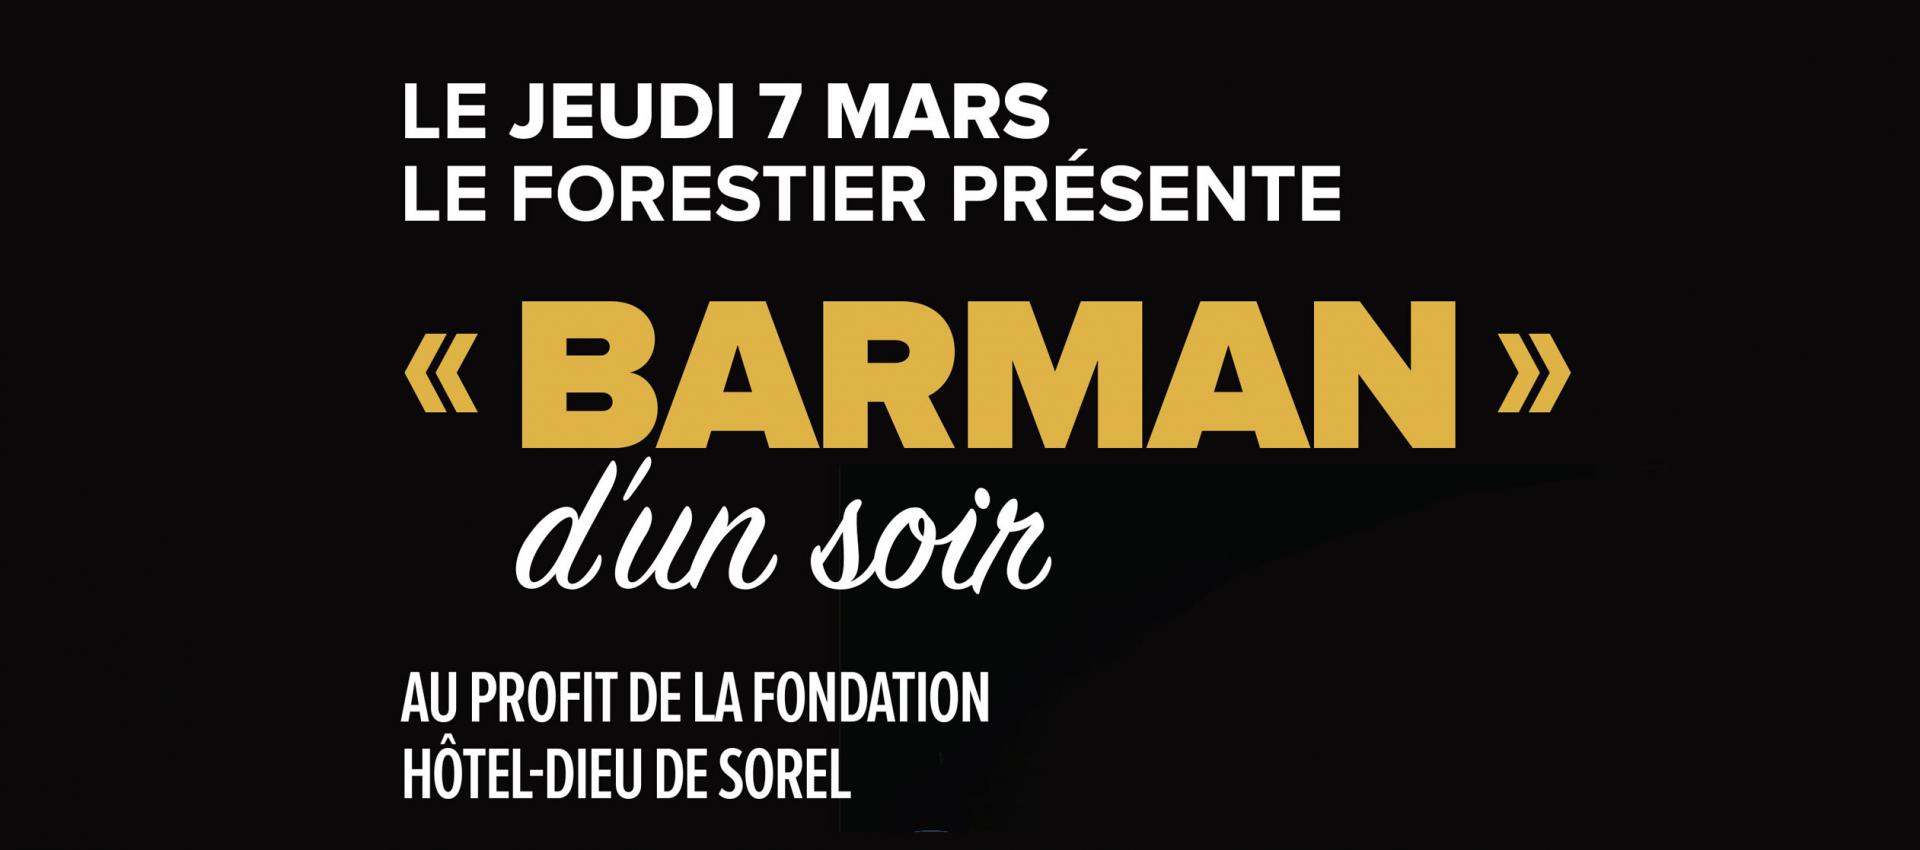 Barman Fondation HD Sorel tracy et cie